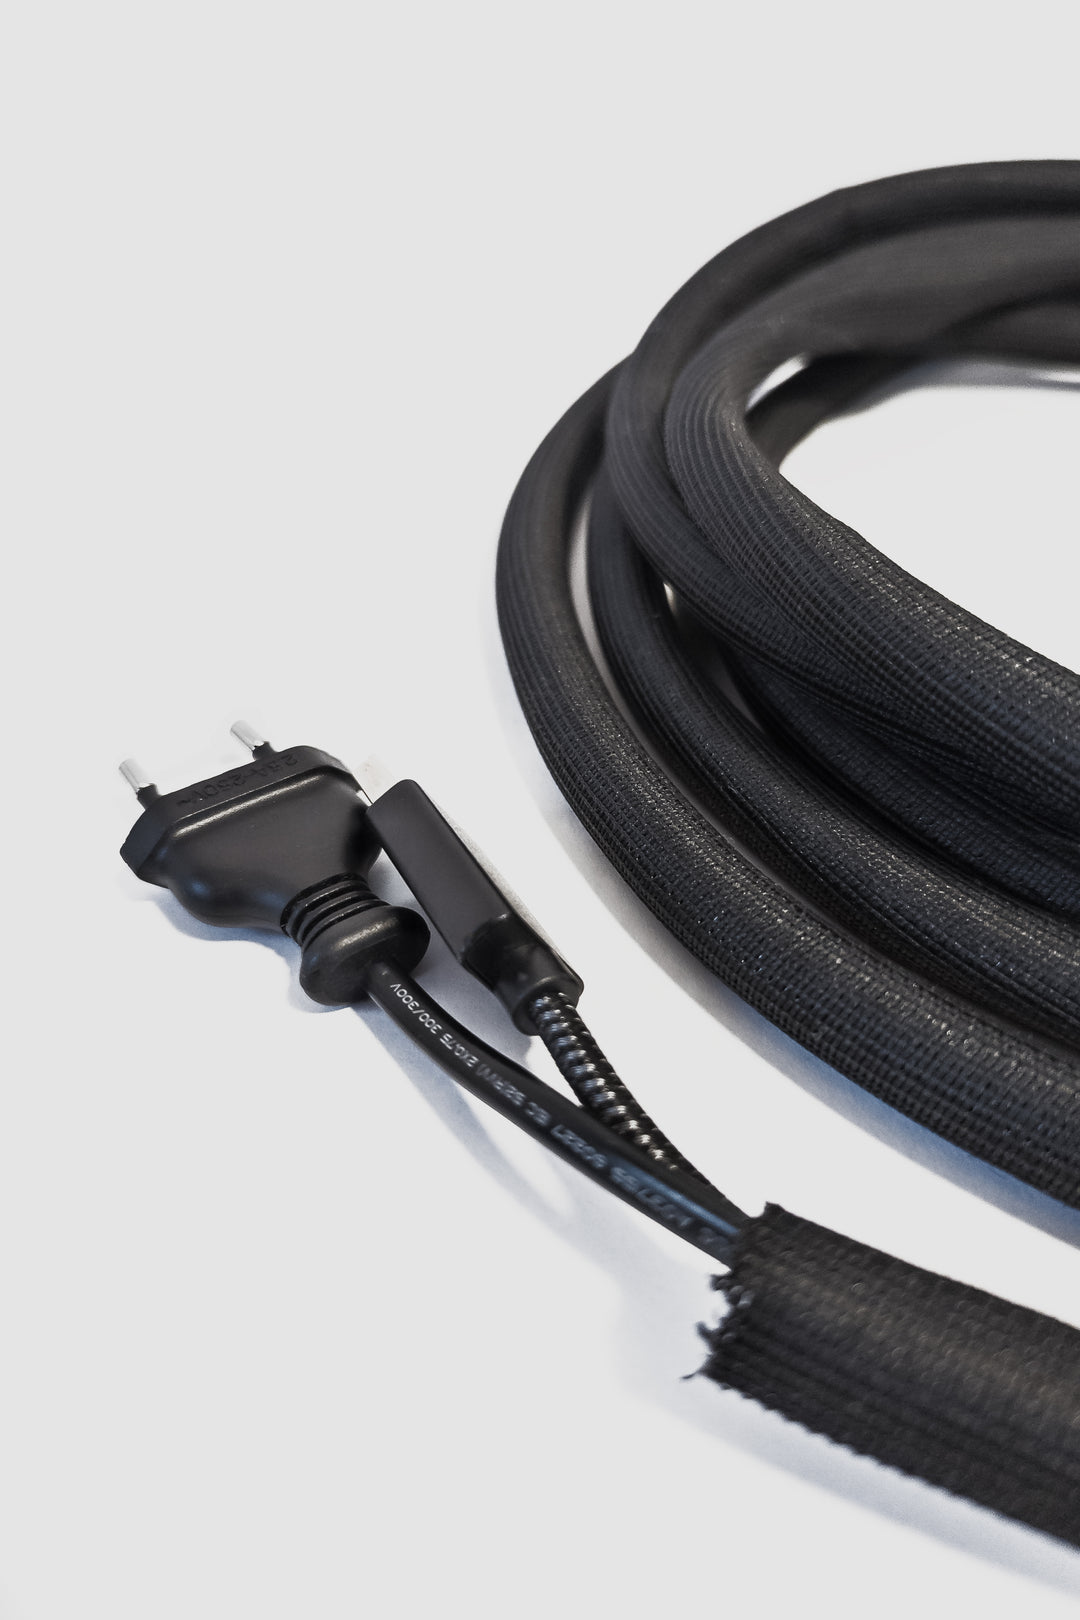 Self-closing cable hose / fabric hose, black